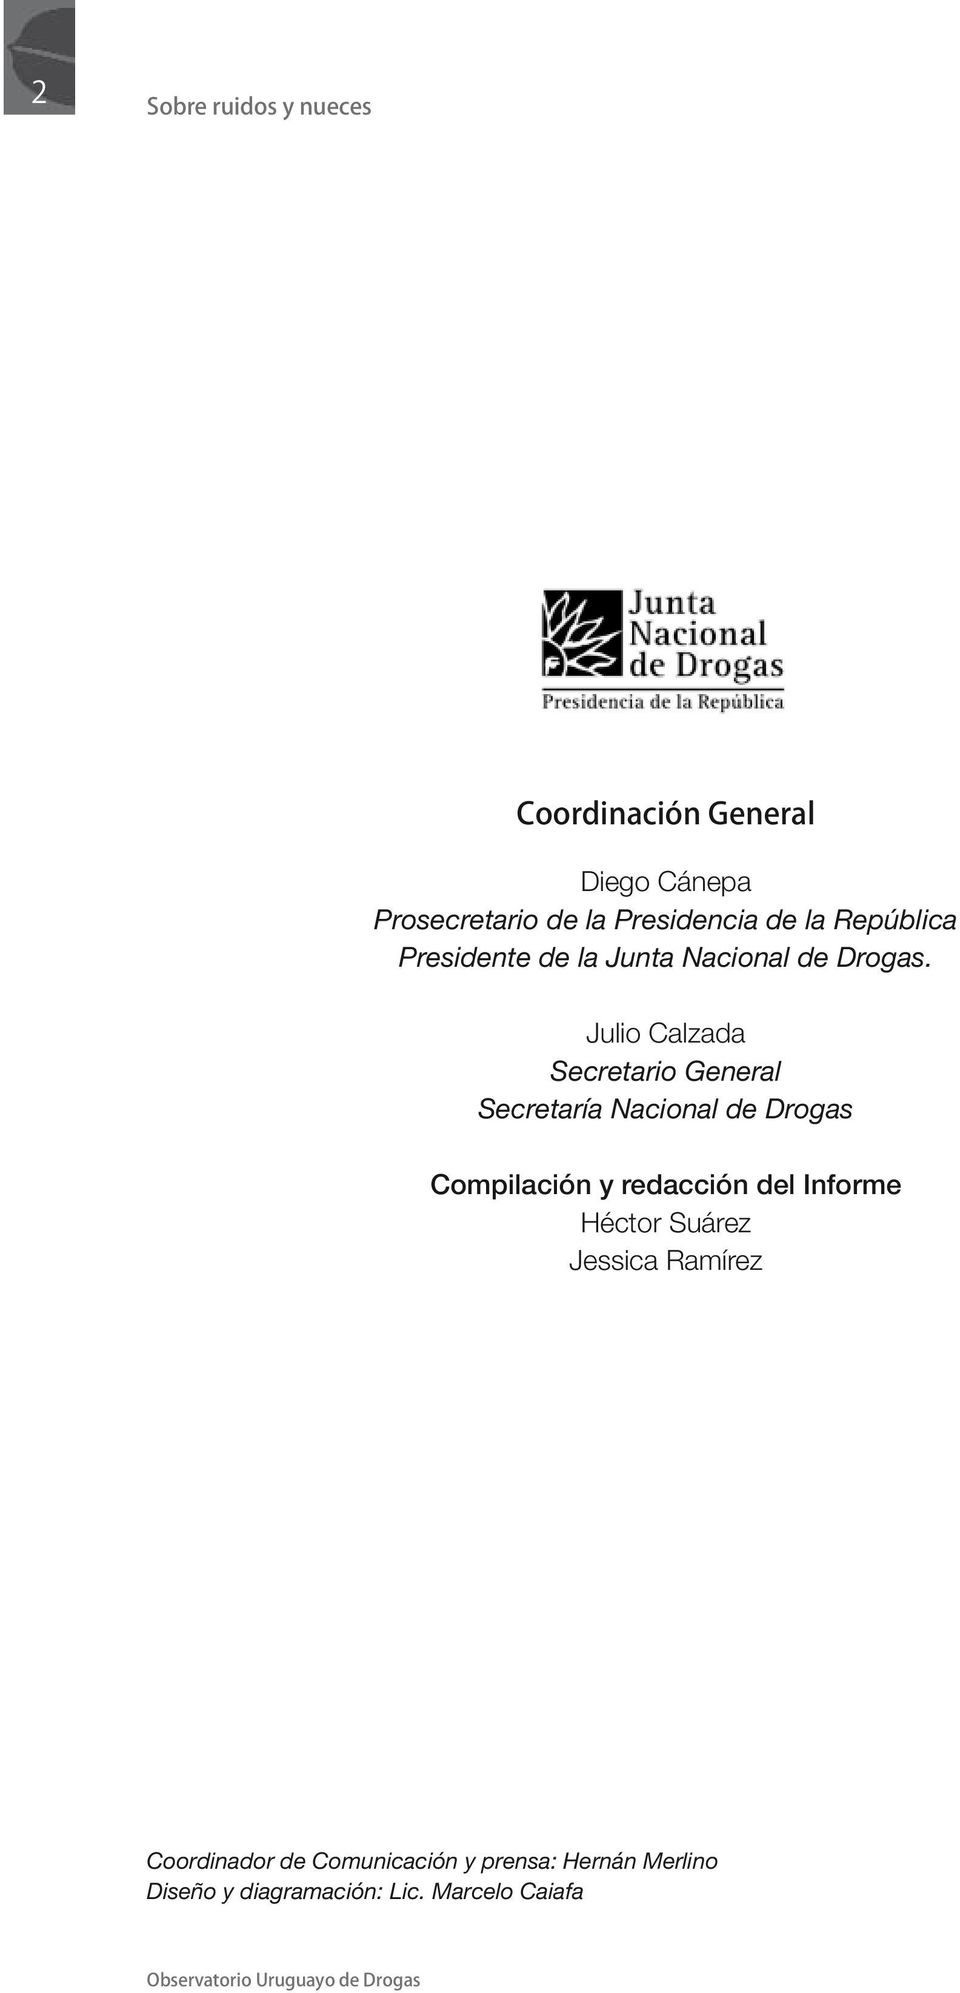 Julio Calzada Secretario General Secretaría Nacional de Drogas Compilación y redacción del Informe